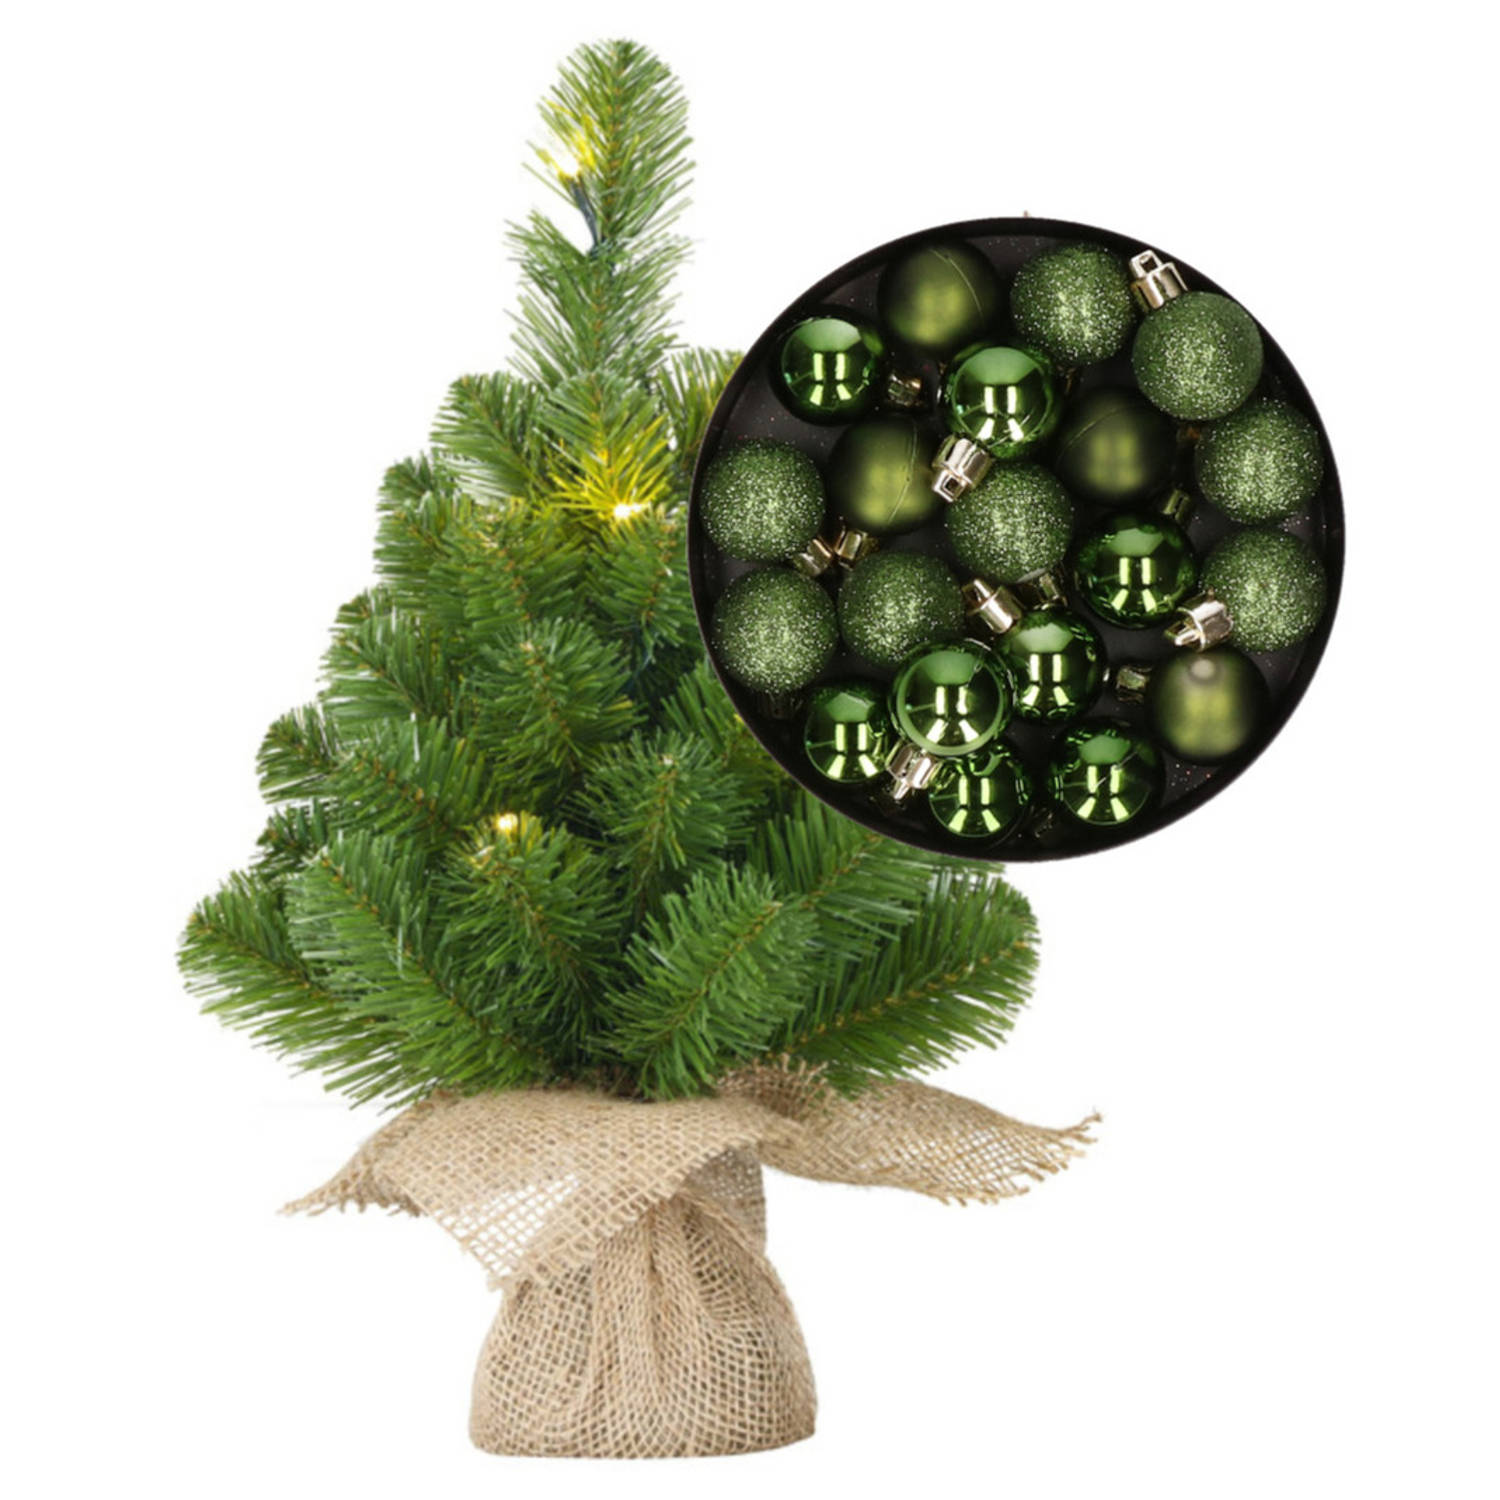 Mini kerstboom-kunstboom met verlichting 45 cm en inclusief kerstballen groen Kunstkerstboom